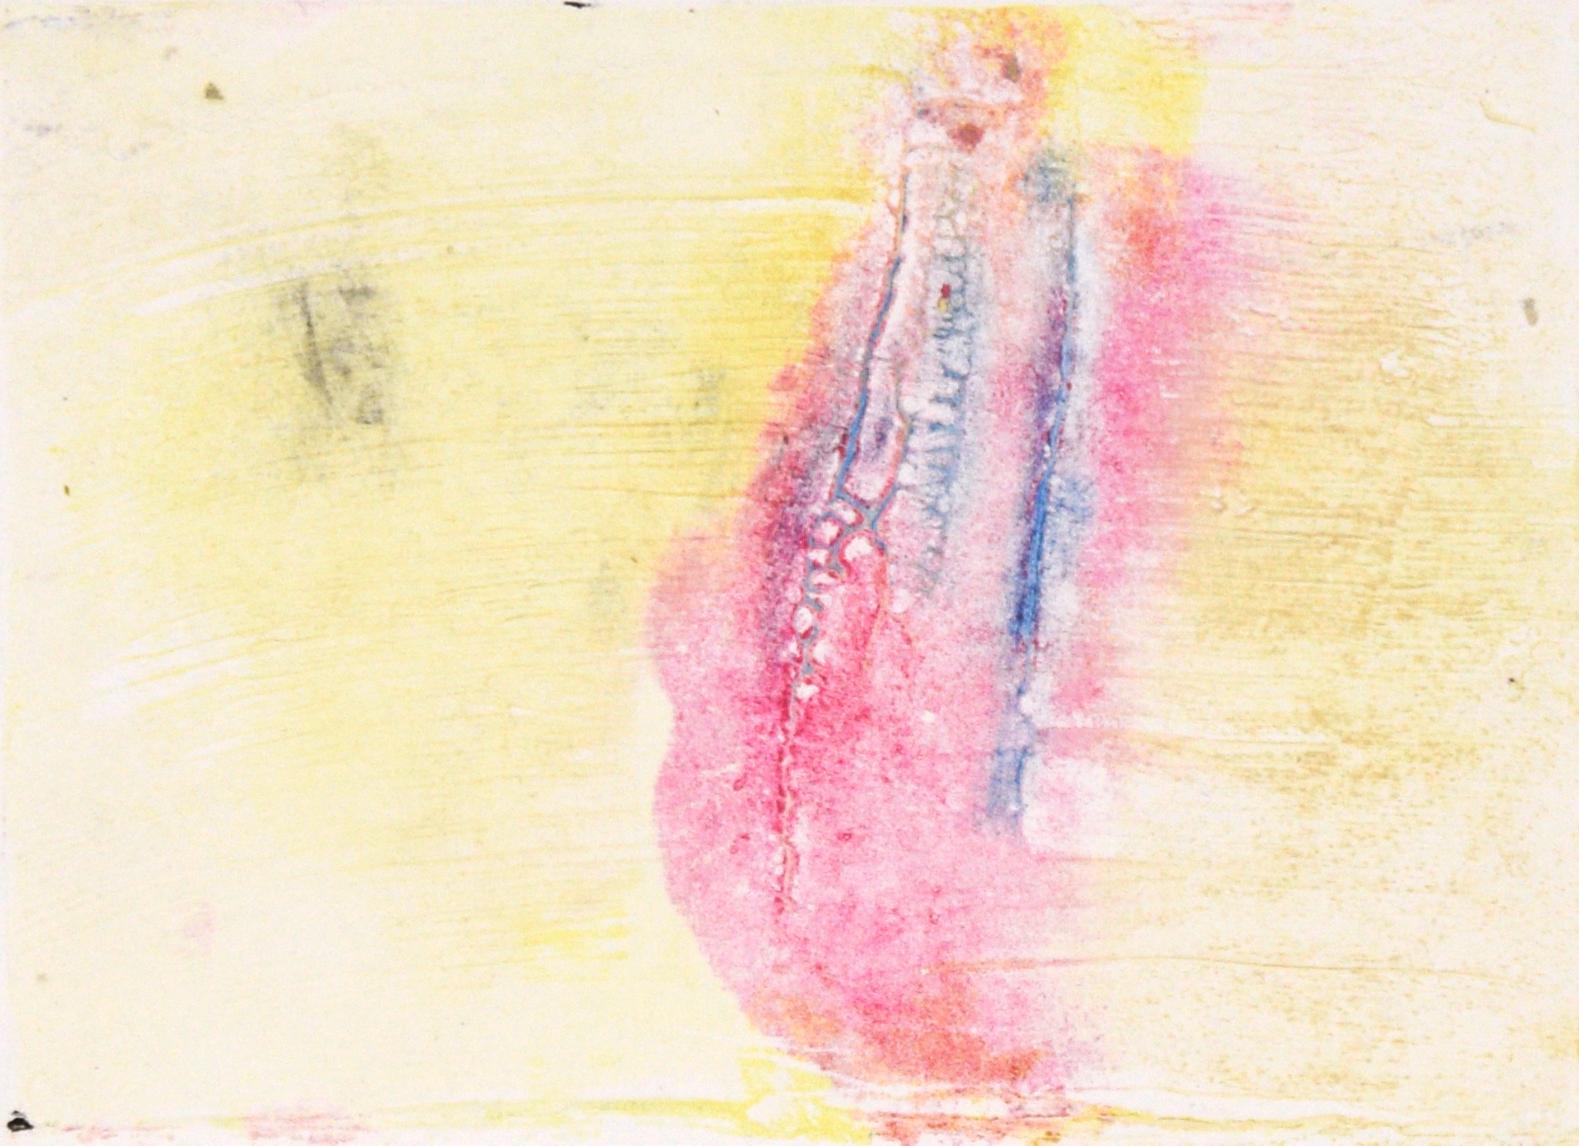 Monotype de transfert bleu et rose sur jaune texturé à l'huile sur papier - Print de Heather Speck